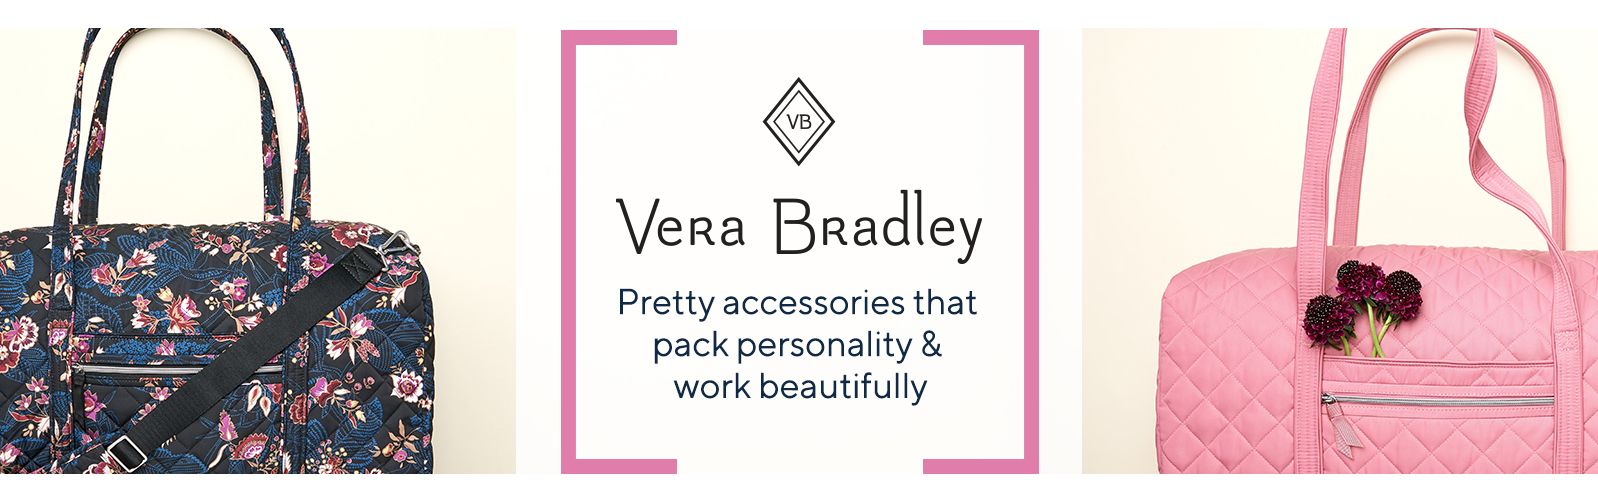 vera bradley purses | eBay